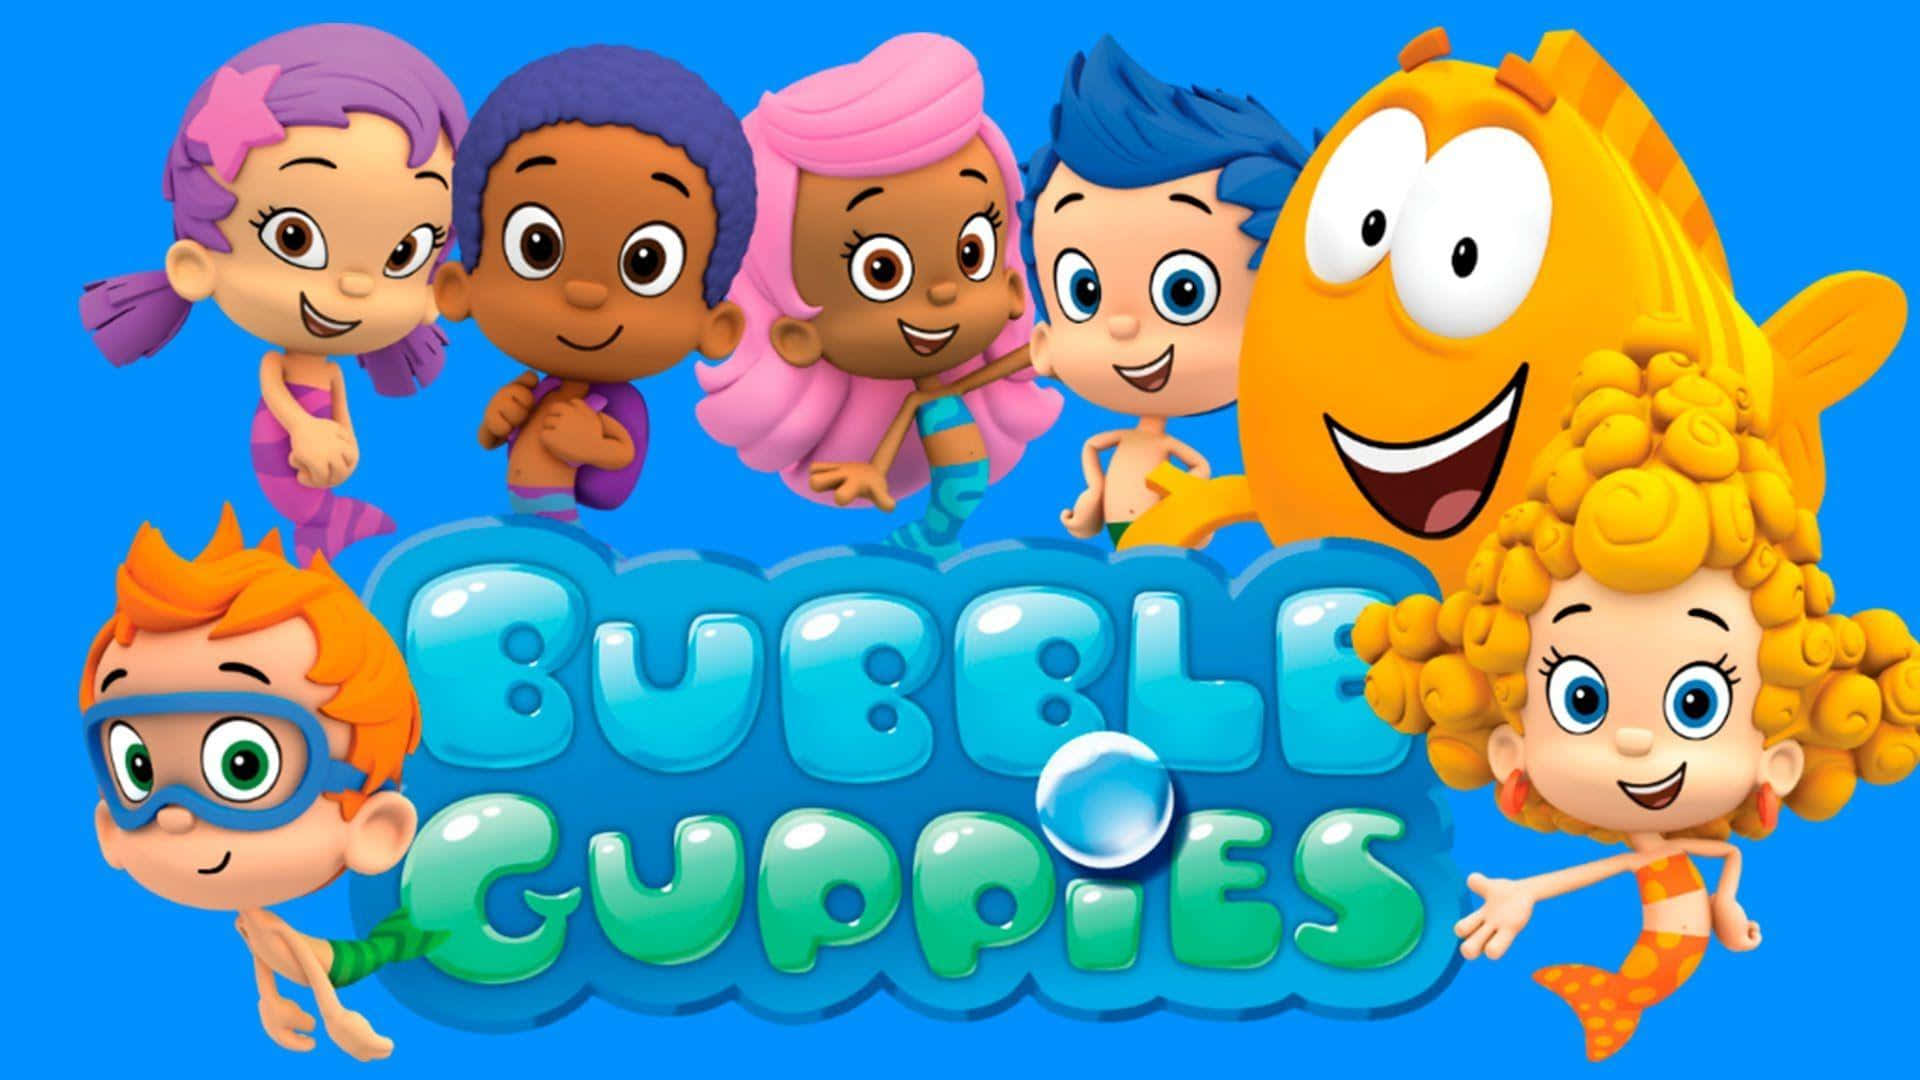 The Fun Bubble Guppies Gang!